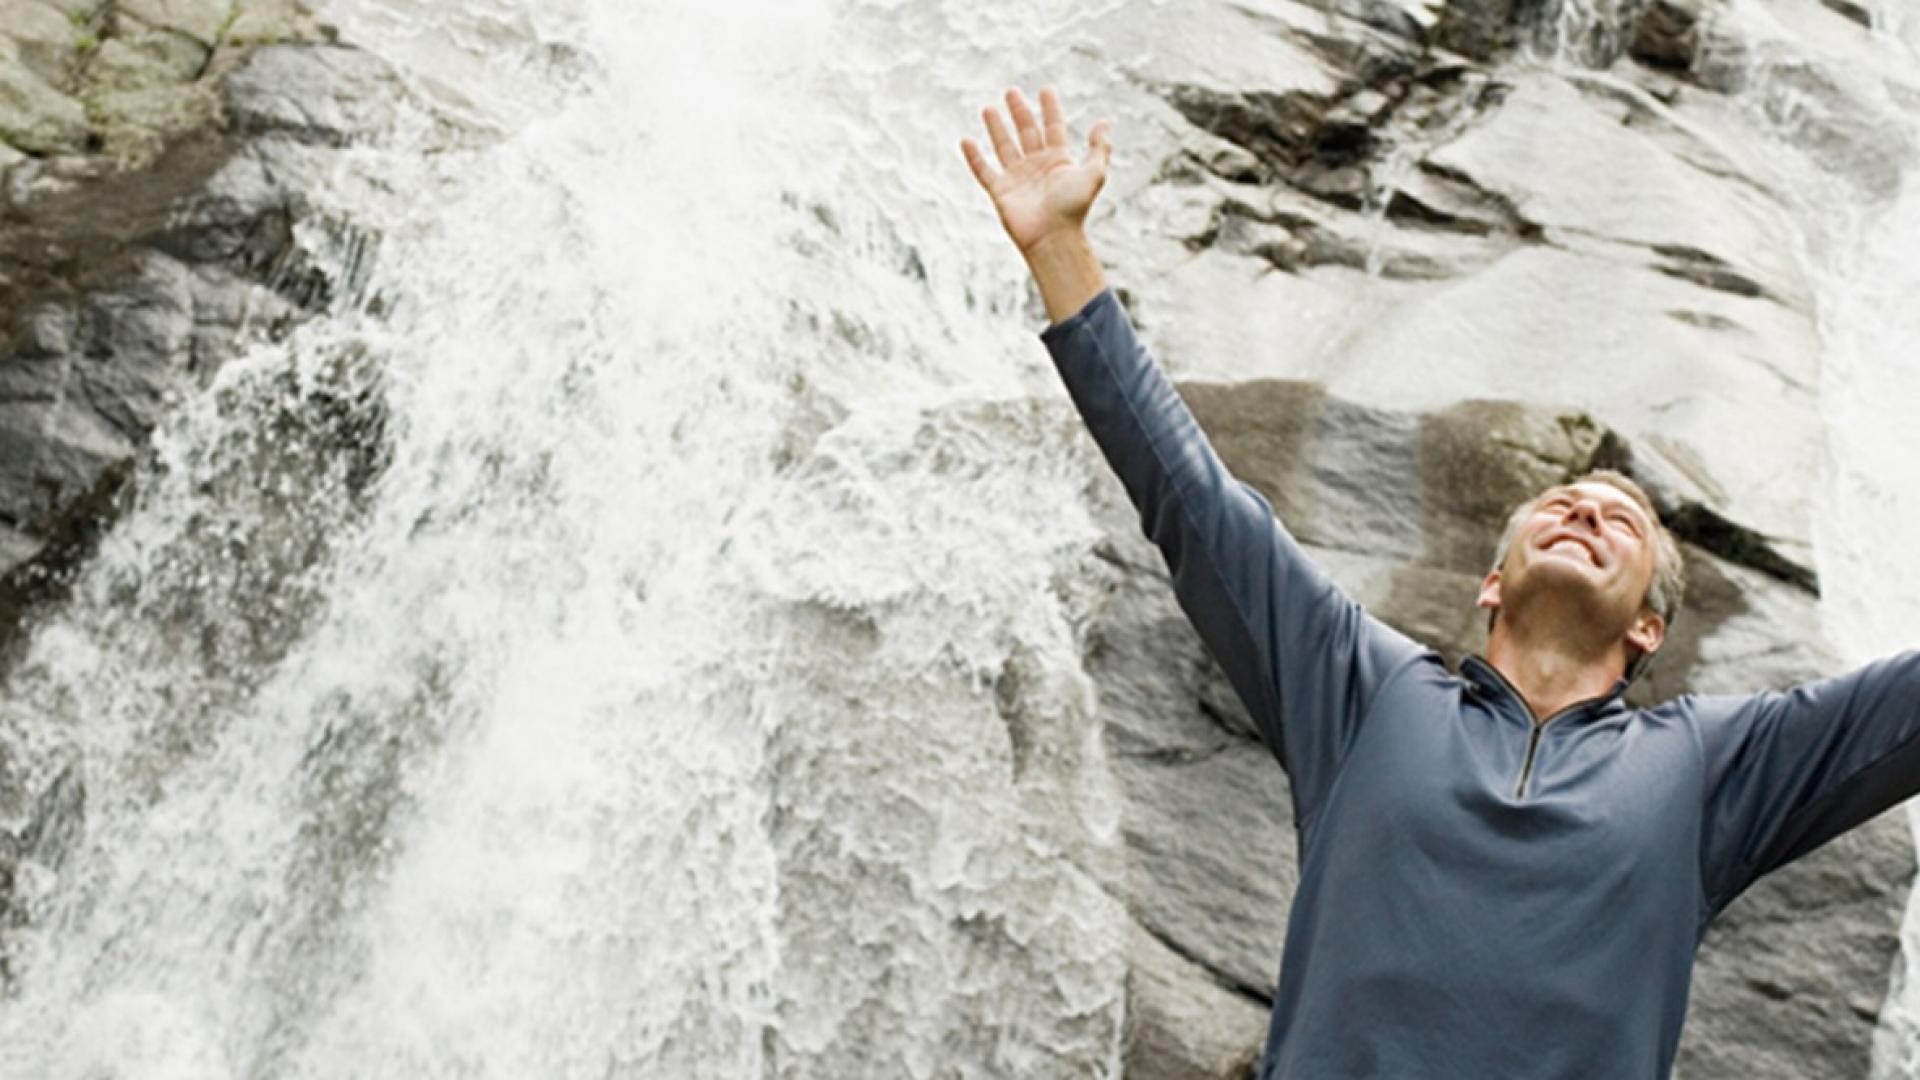 ein erwachsener Mann steht vor einer Felswand mit einem Wasserfall und streckt die Arme nach oben.